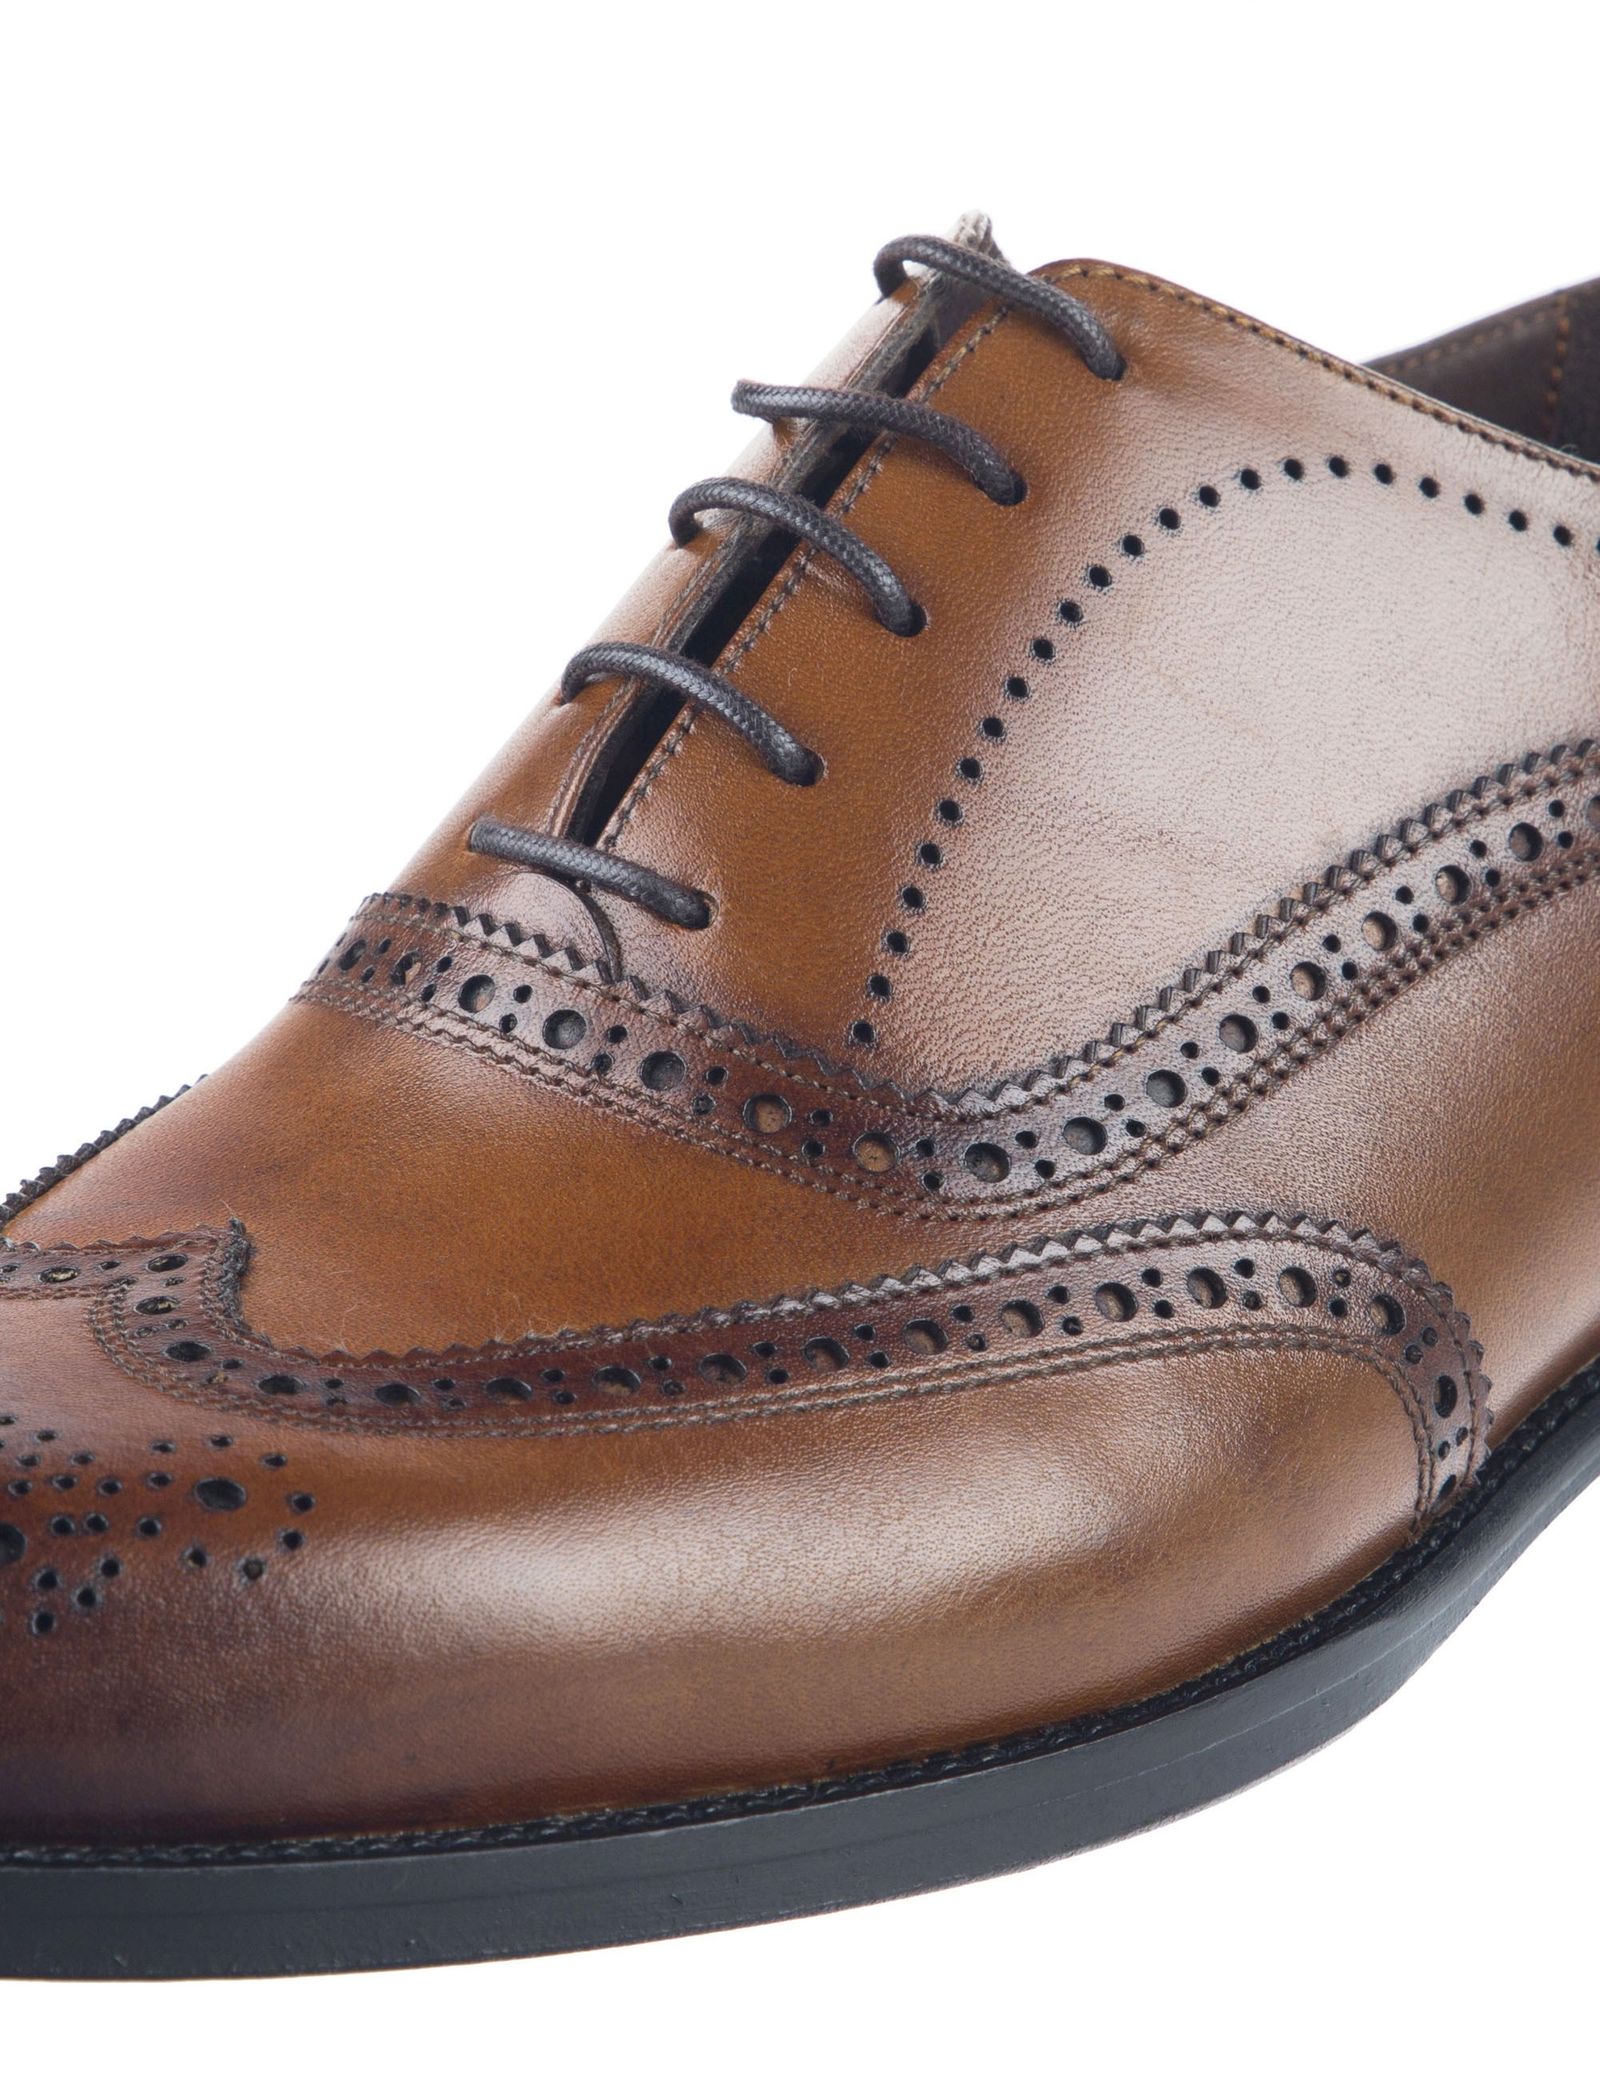 کفش چرم رسمی مردانه - درسا - Brown - 4